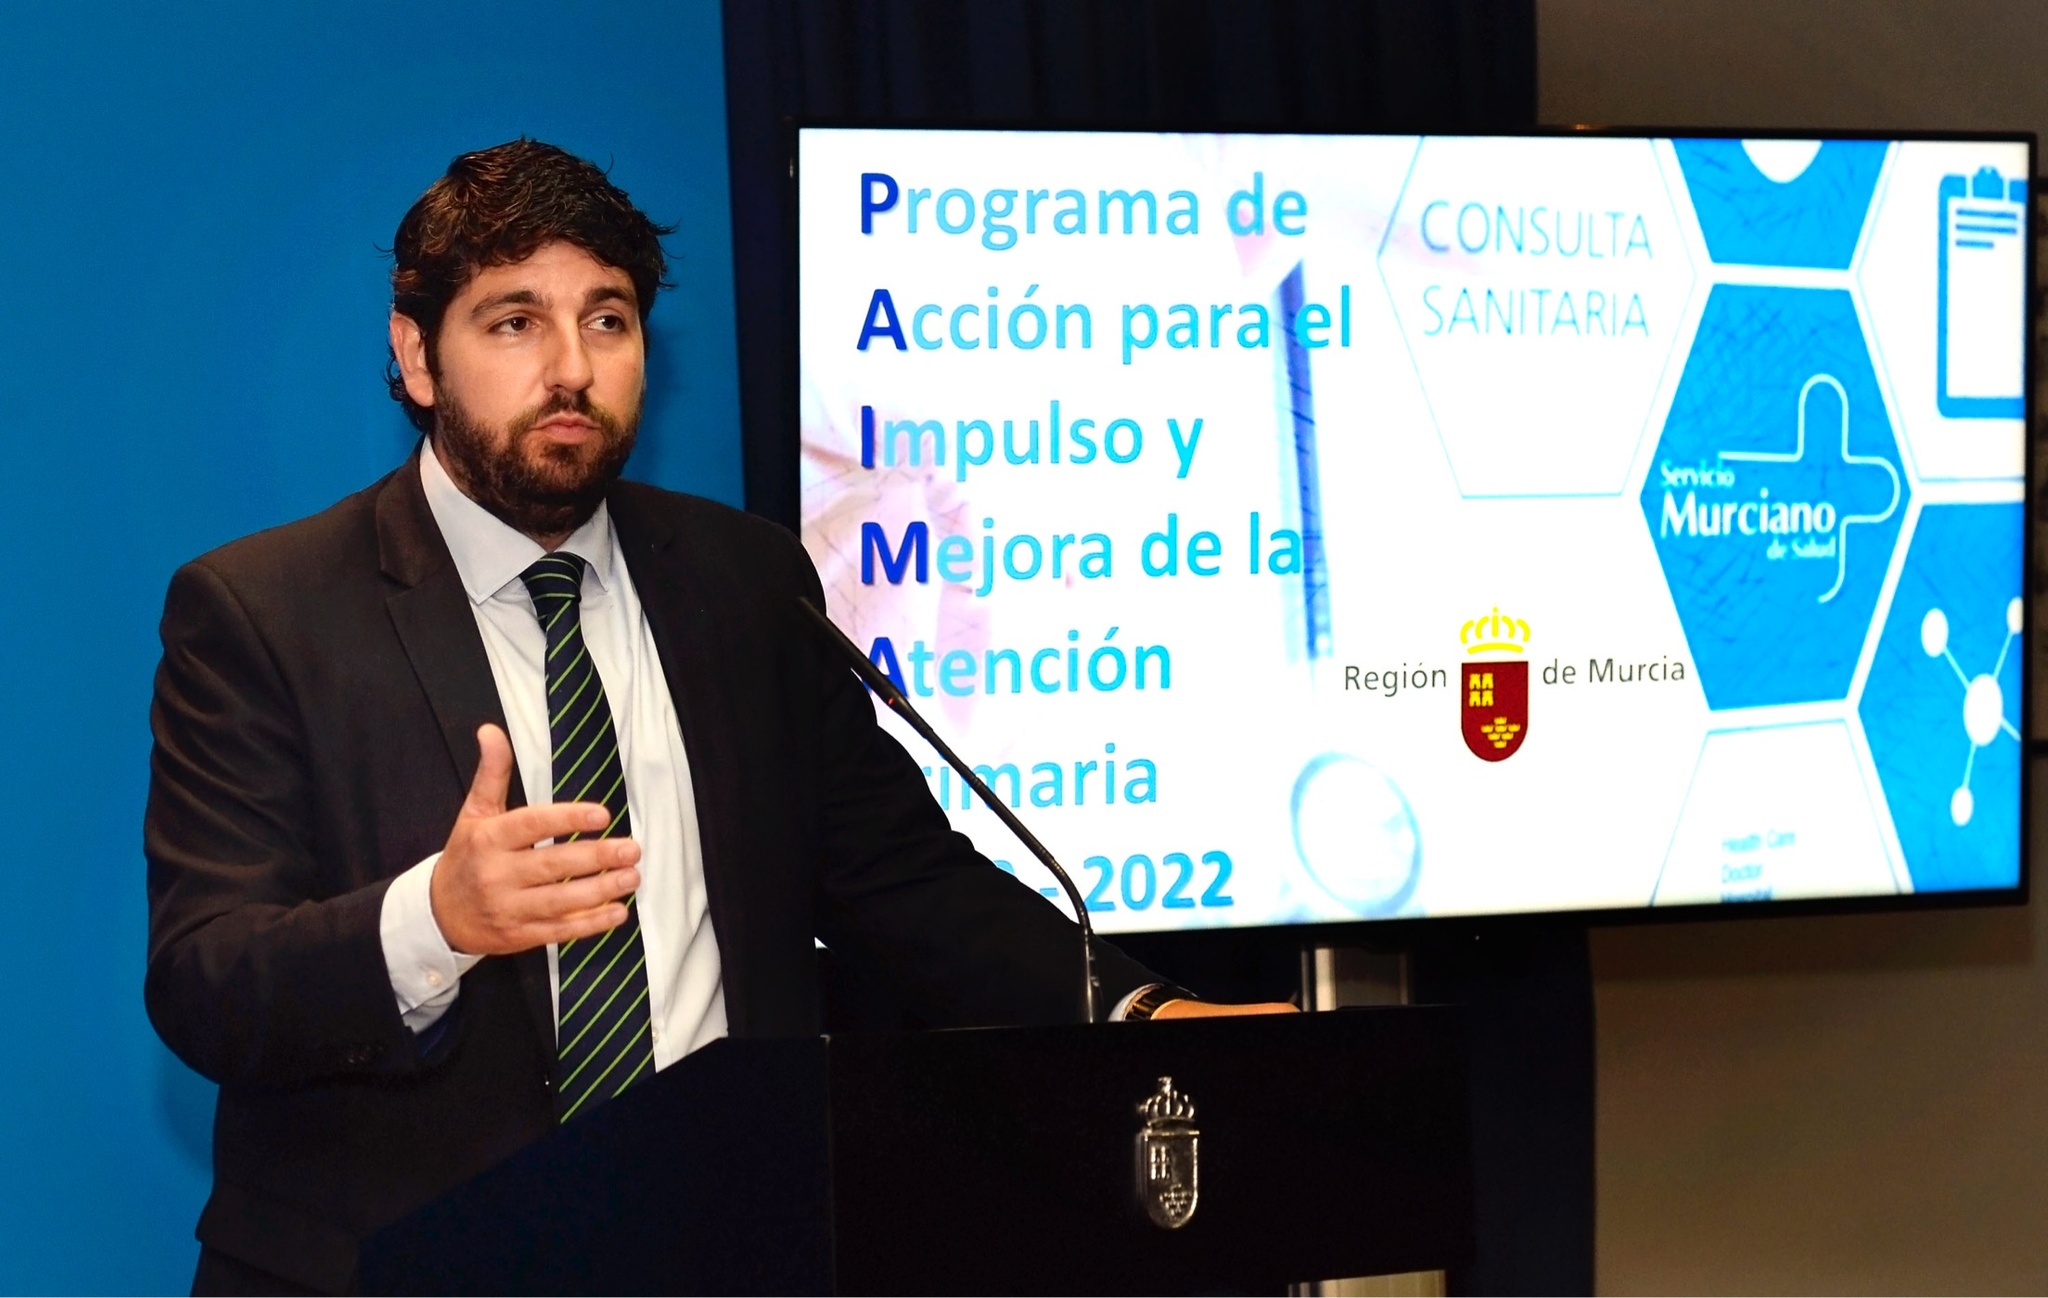 El jefe del Ejecutivo regional, Fernando López Miras, presenta el Programa de Acción para el Impulso y Mejora de la Atención Primaria